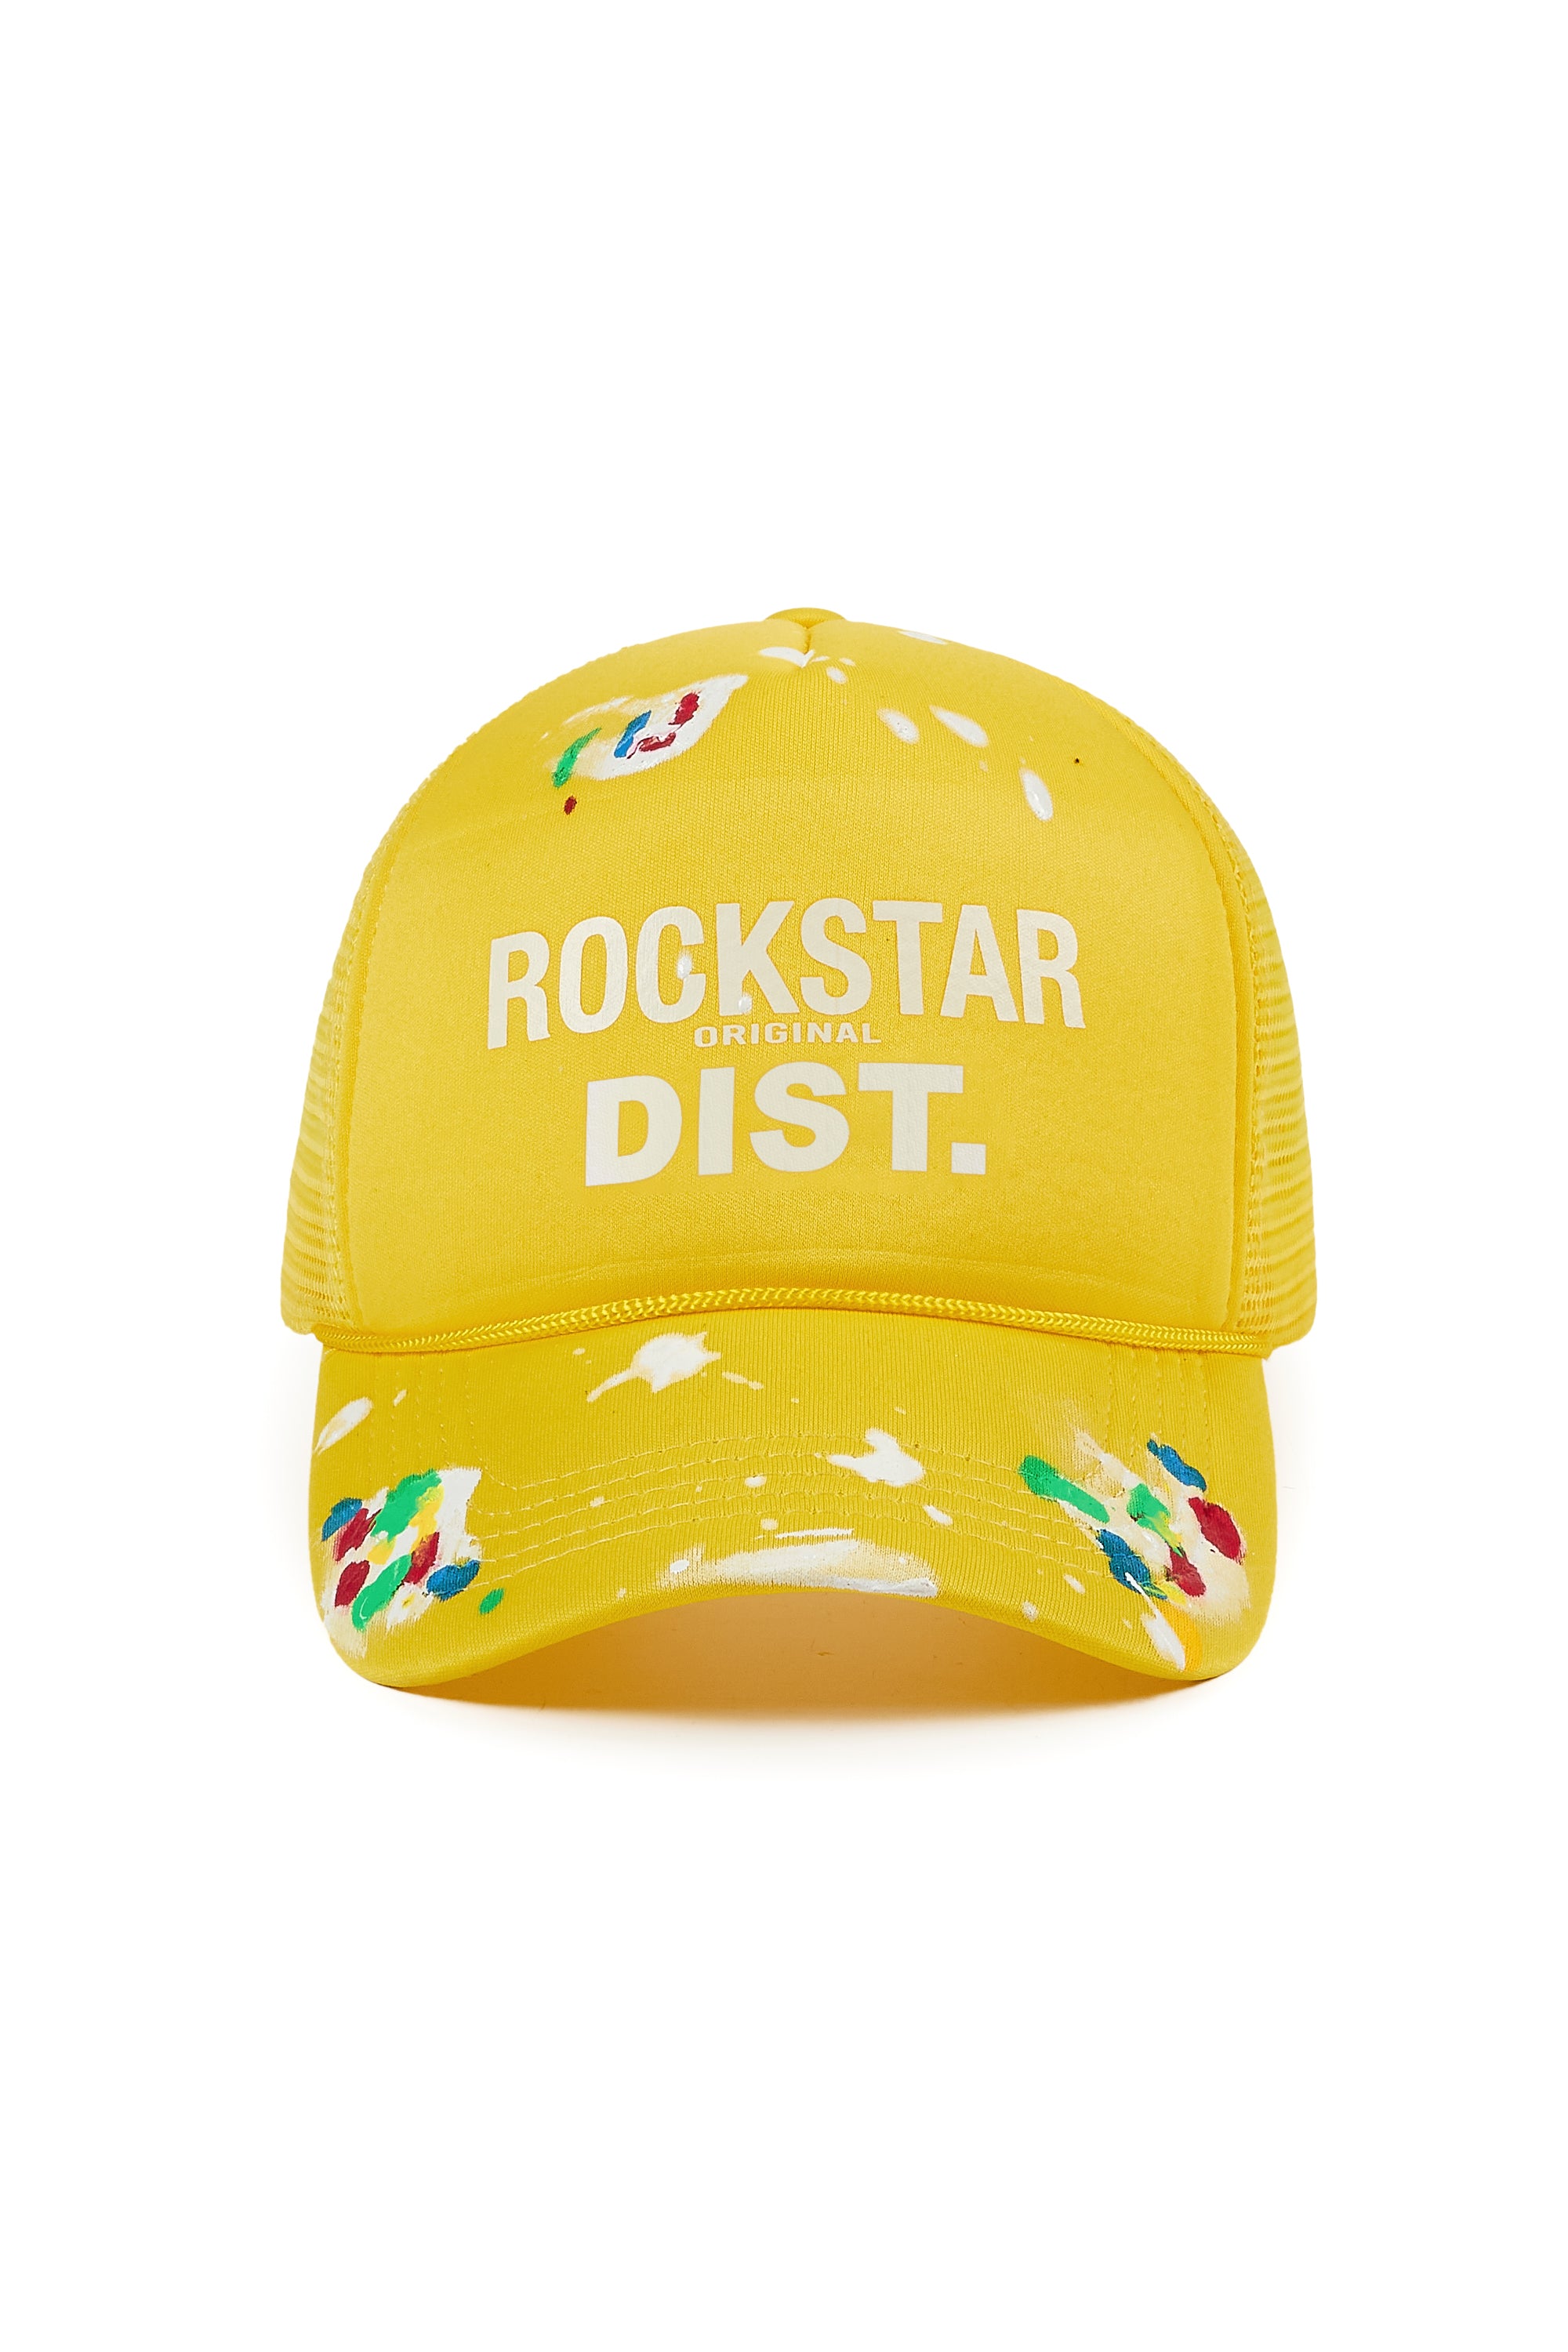 Neptune Yellow Trucker Hat